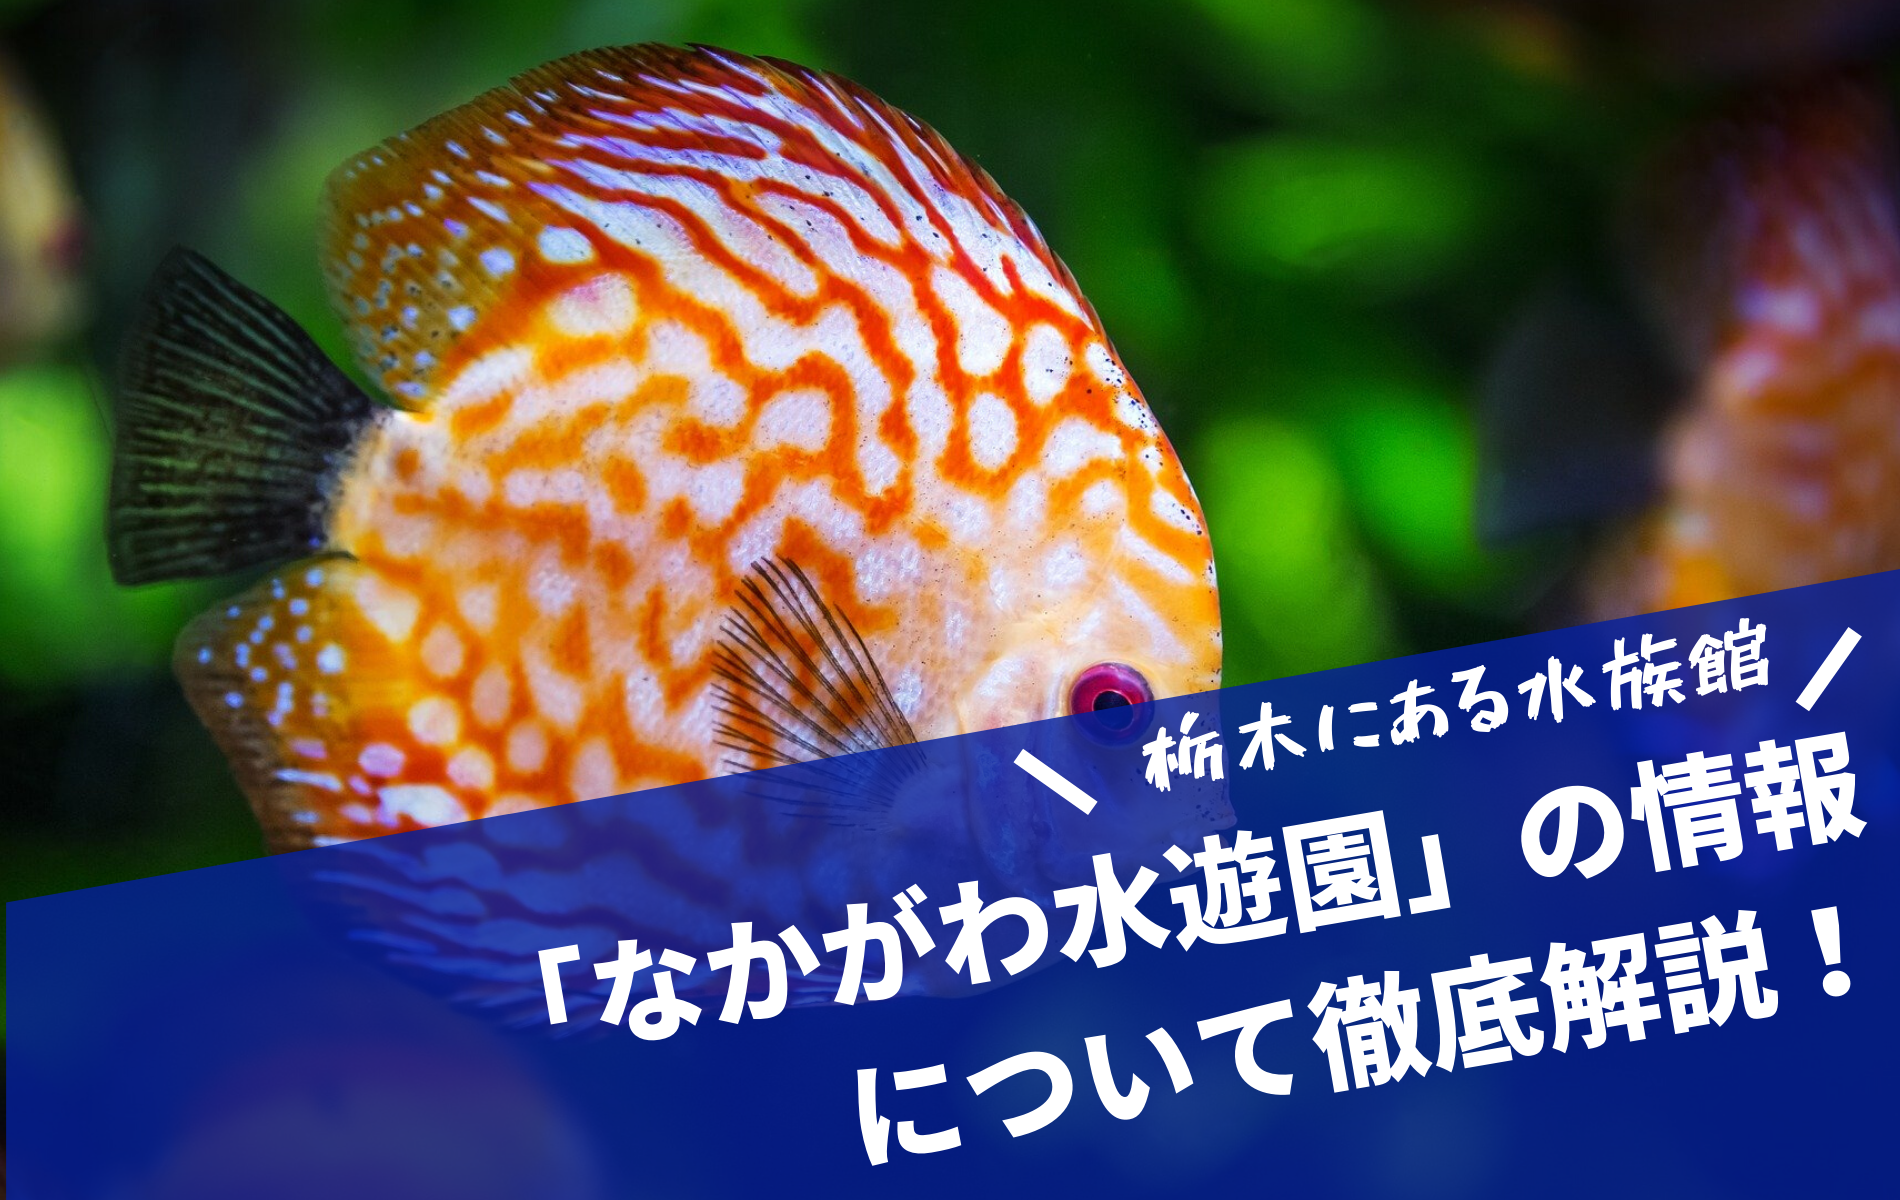 栃木の水族館 なかがわ水遊園 の情報を解説 淡水魚見るならココ ふぉむすい